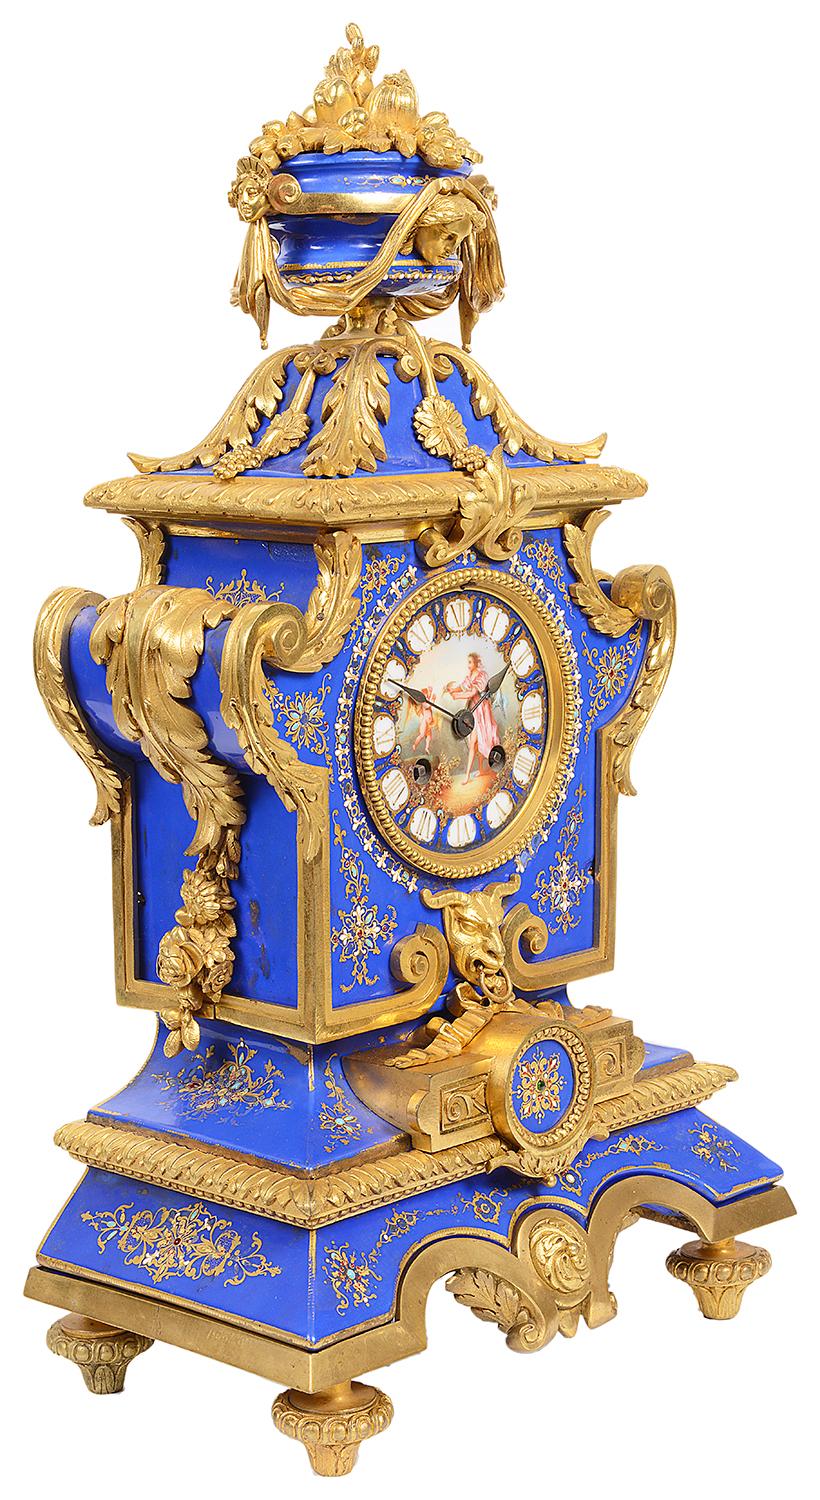 Eine sehr gute Qualität 19. Jahrhundert Französisch vergoldet Ormolu und Sevres-Stil Porzellan Kaminsims Uhr. Mit einer blauen Porzellan-Urne mit Ormolu-Schwänzen, vergoldeten Ormolu-Blattbeschlägen und Porzellan-Einsätzen mit vergoldetem